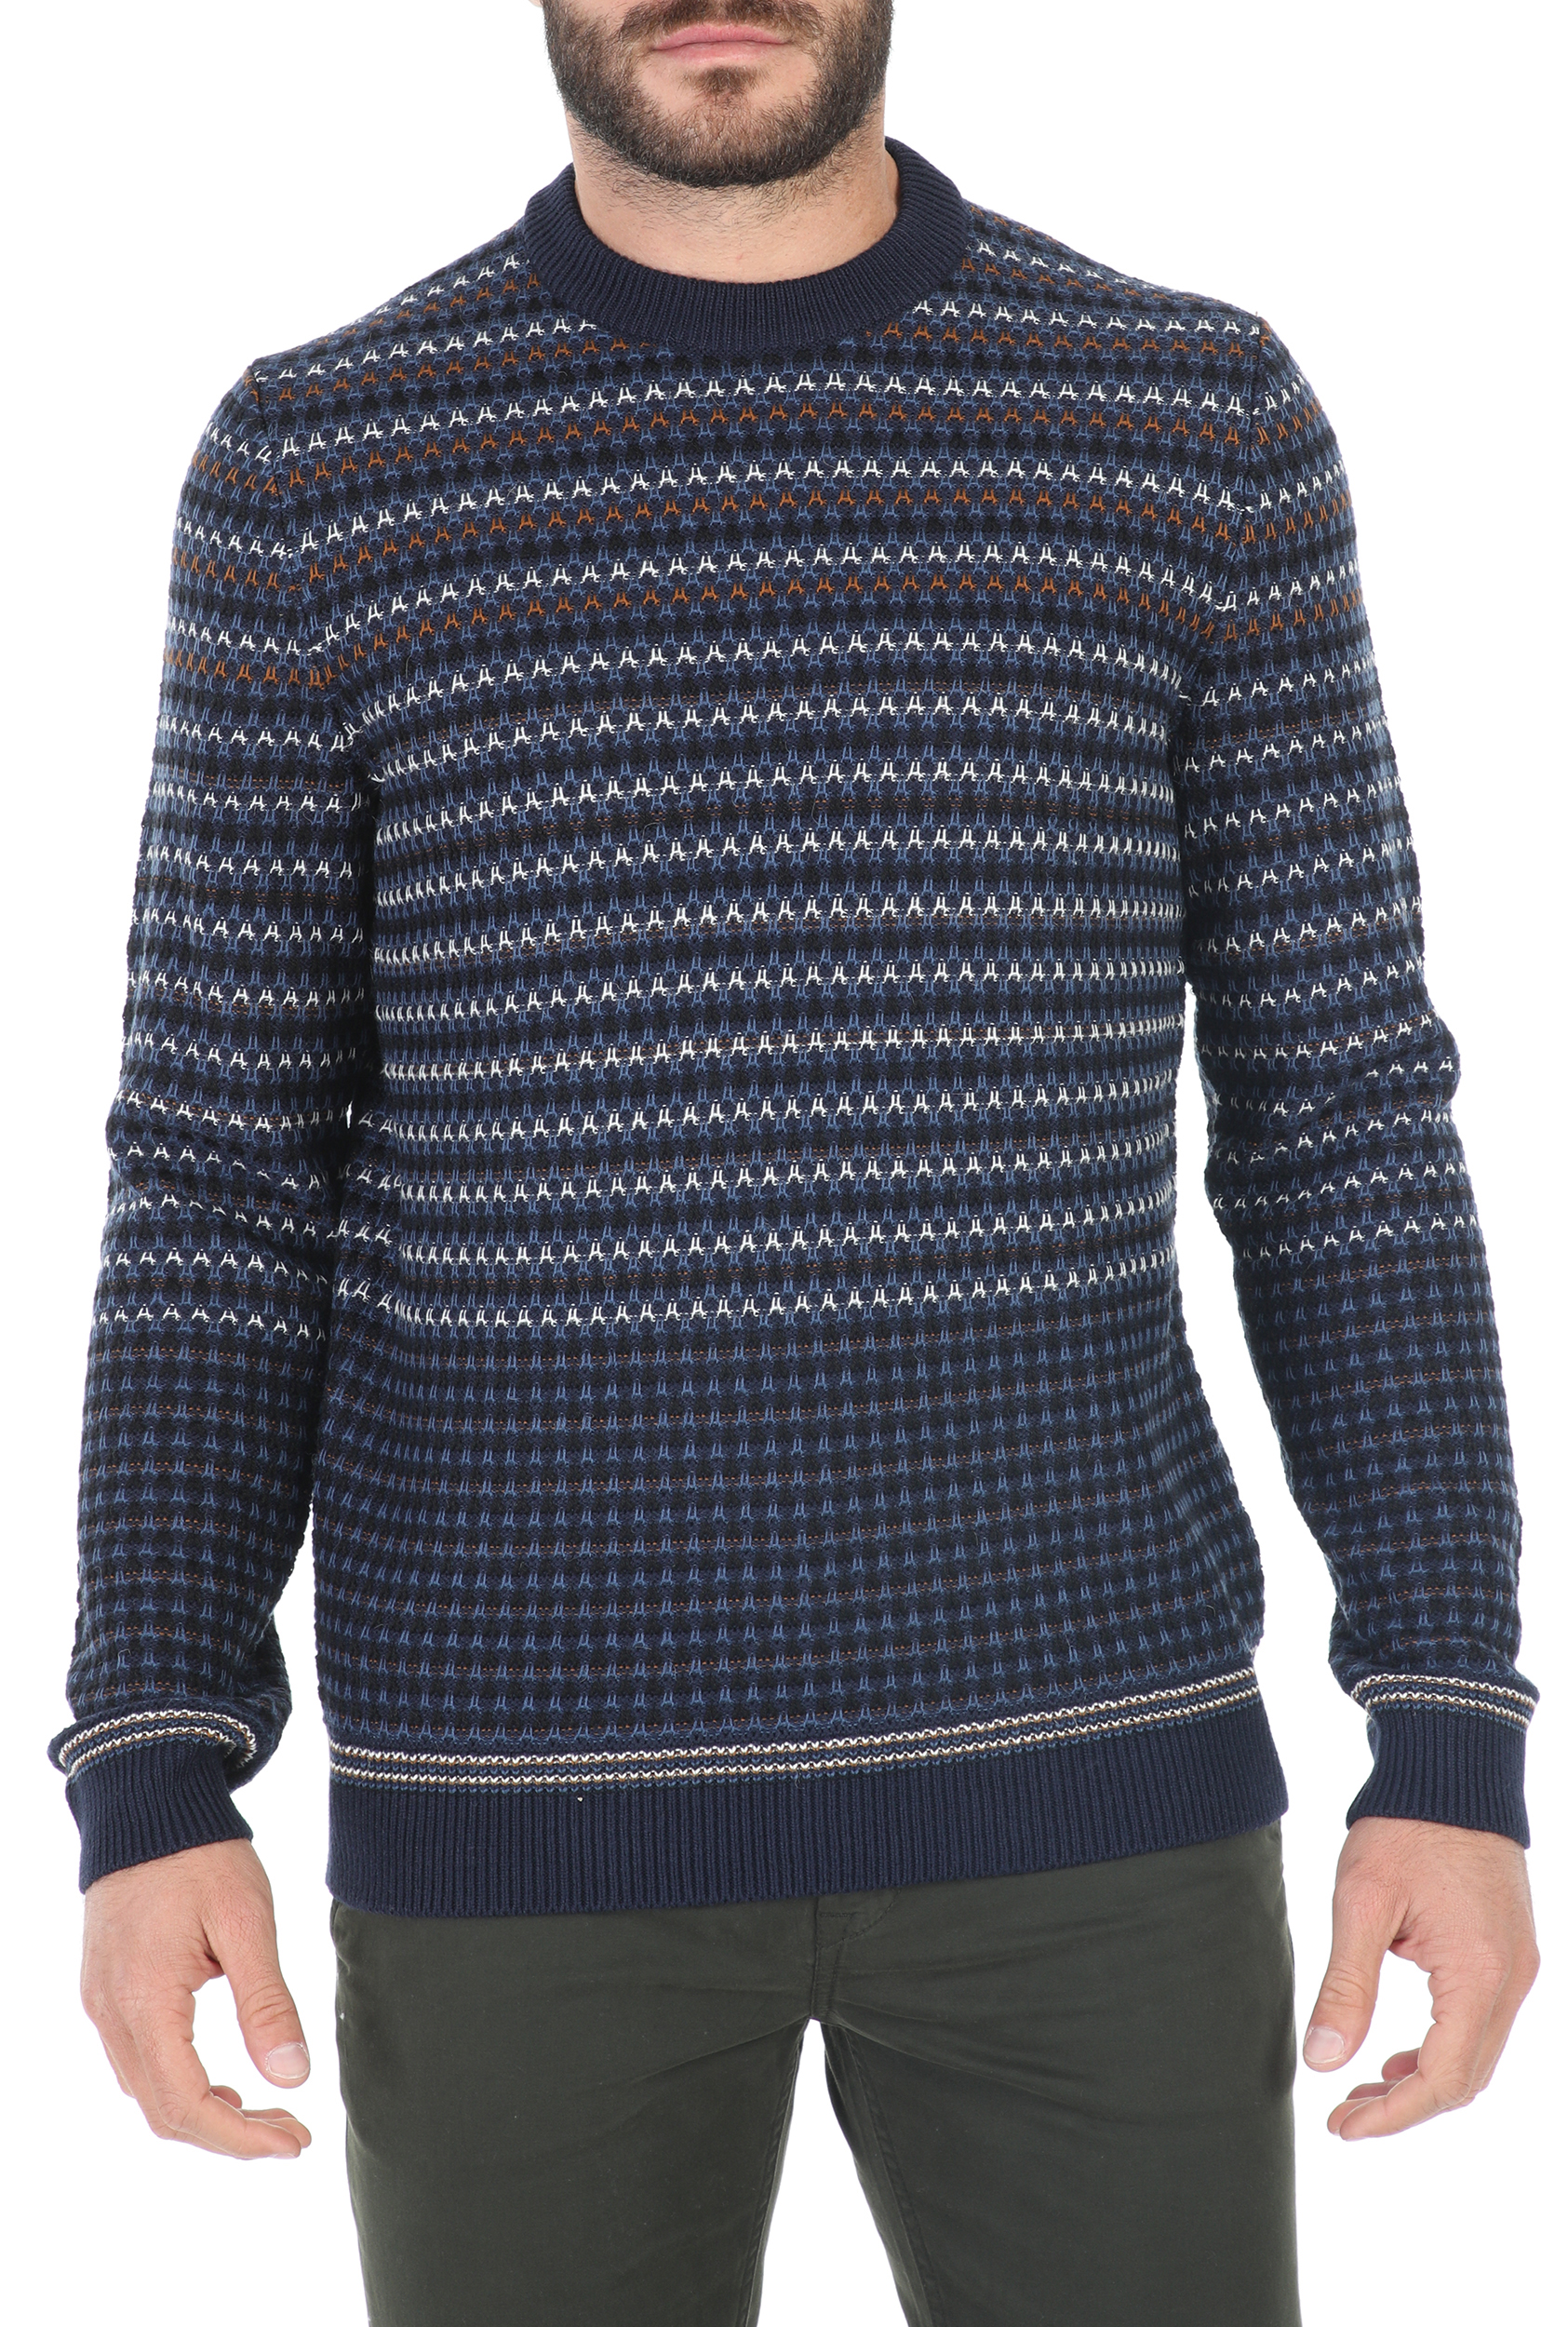 Ανδρικά/Ρούχα/Πλεκτά-Ζακέτες/Μπλούζες BOSS - Ανδρικό πουλόβερ BOSS Acree μπλε